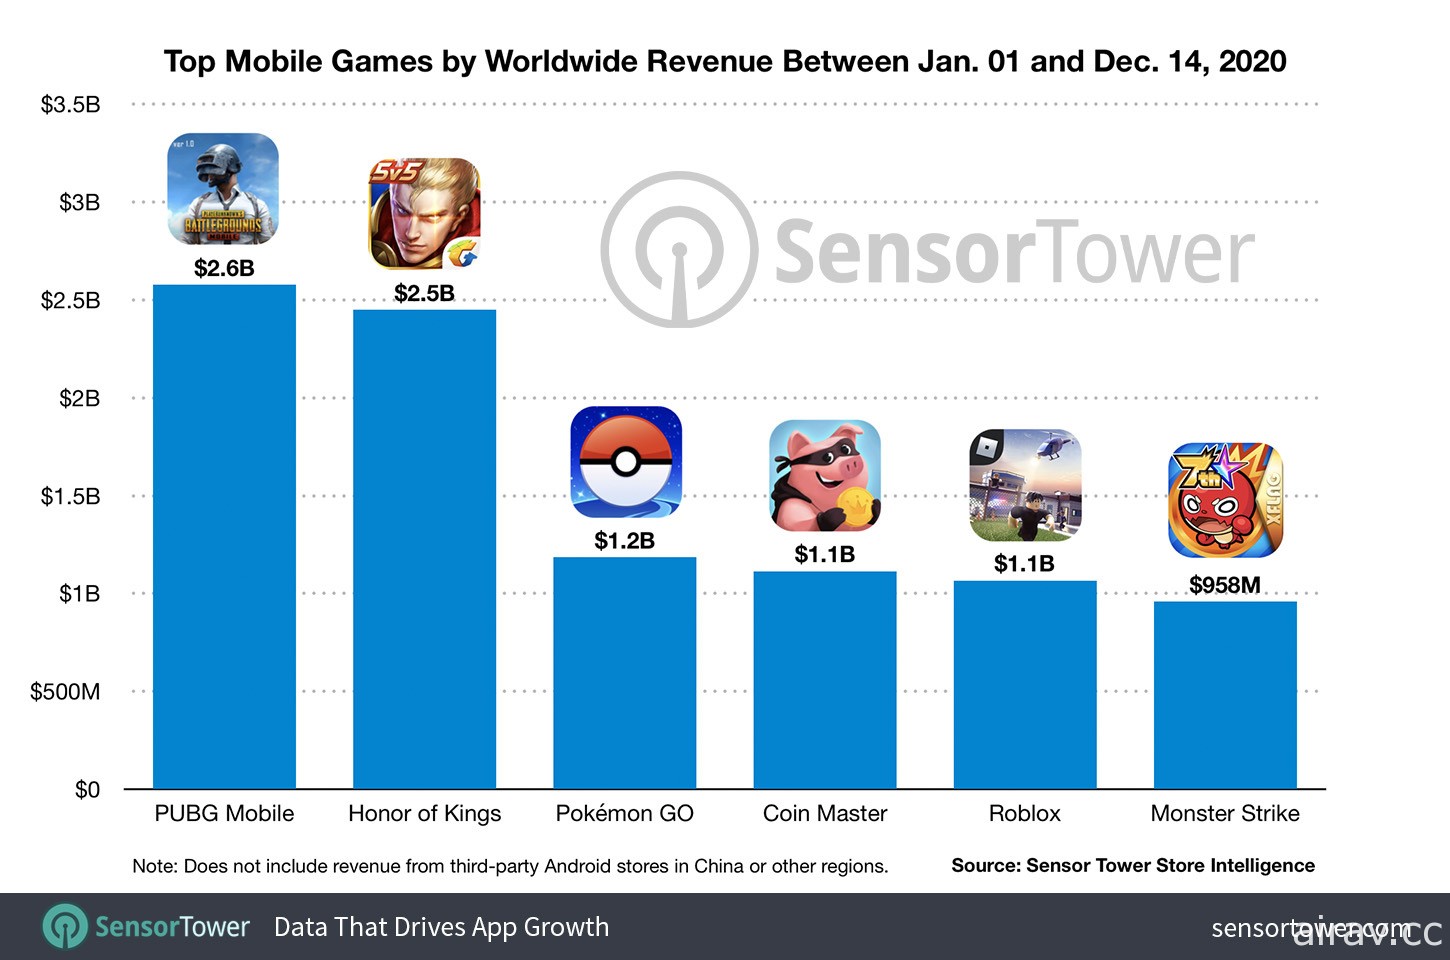 2020 年迄今已有 5 款手机游戏突破 10 亿美元营收 《PUBG Mobile》《荣耀王者》领跑